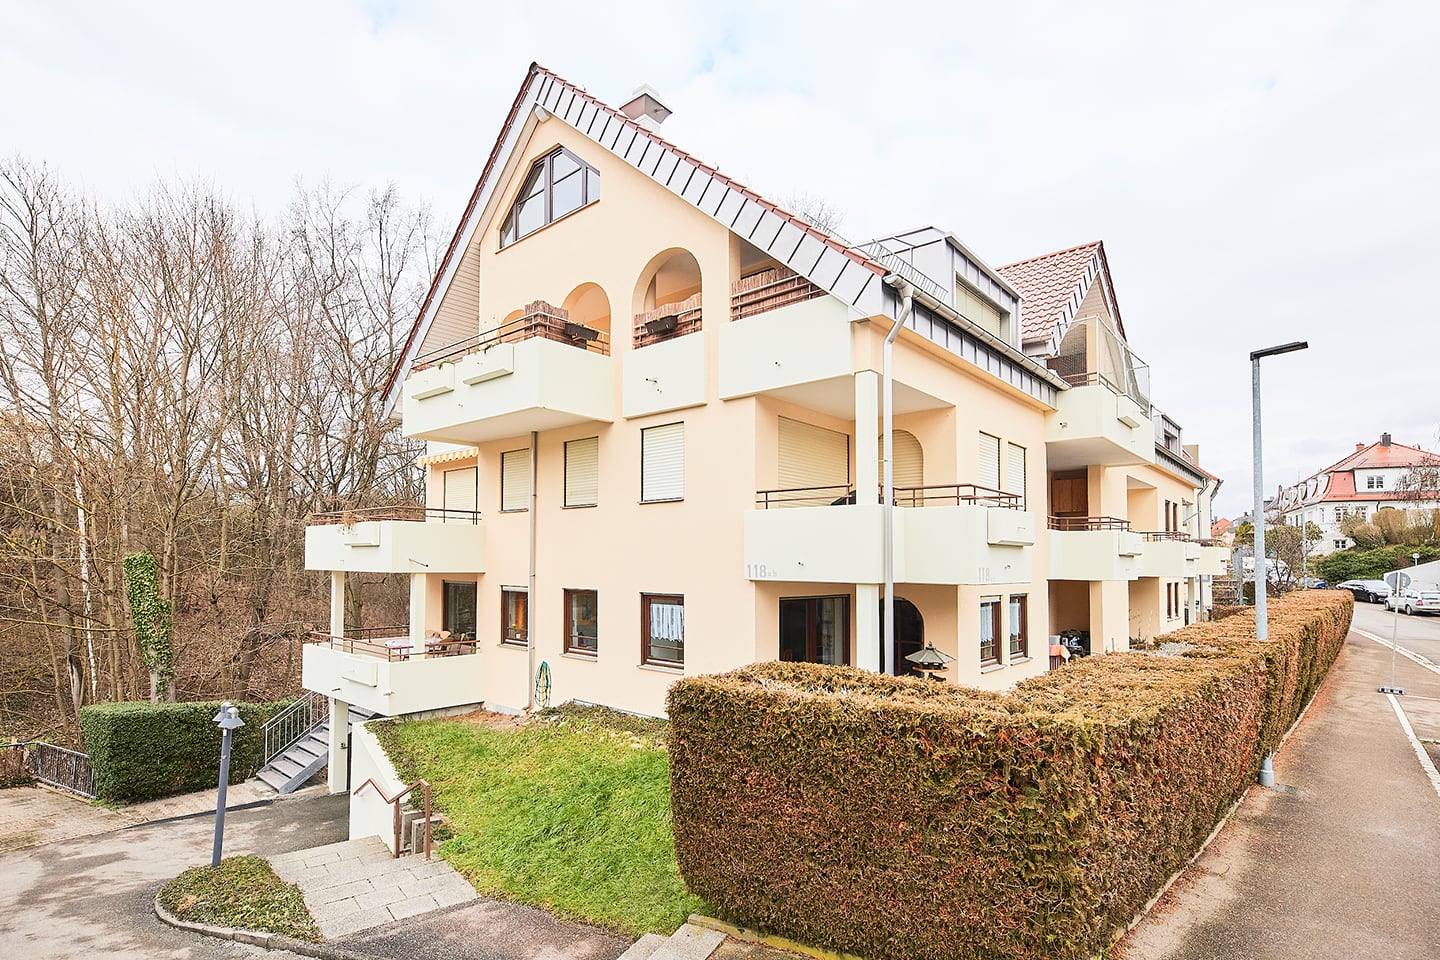 Mietwohnung Kaltental: Mehrfamilienhaus in der Schwarzwaldstraße